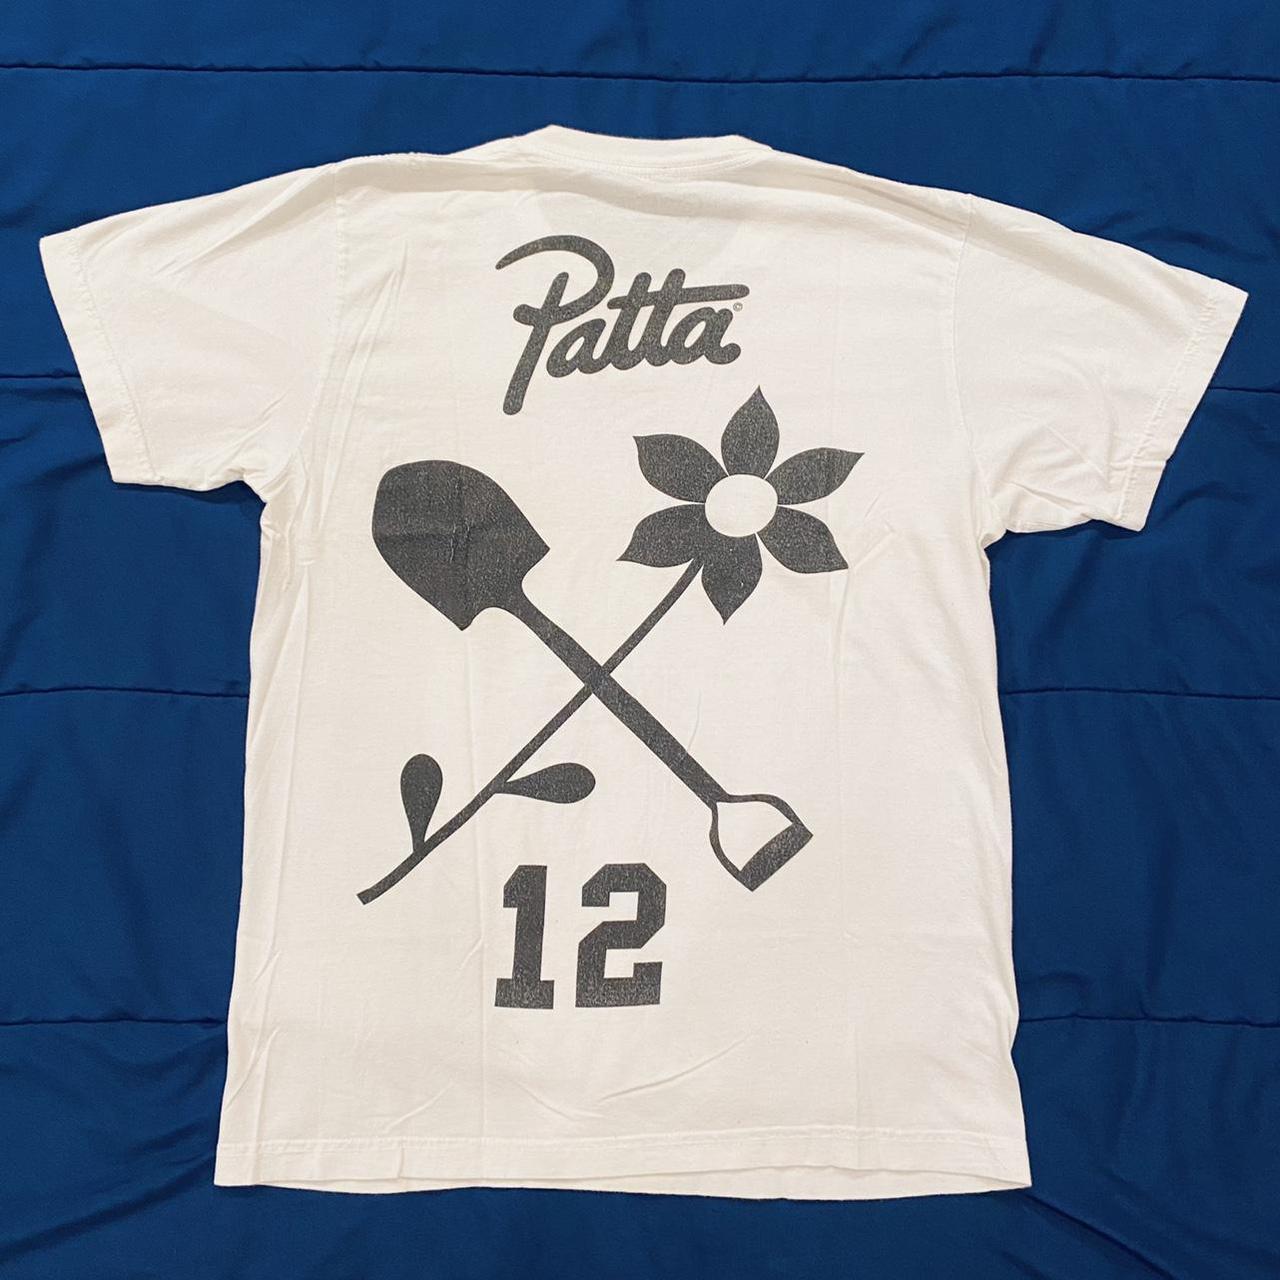 Patta Men's White and Black T-shirt